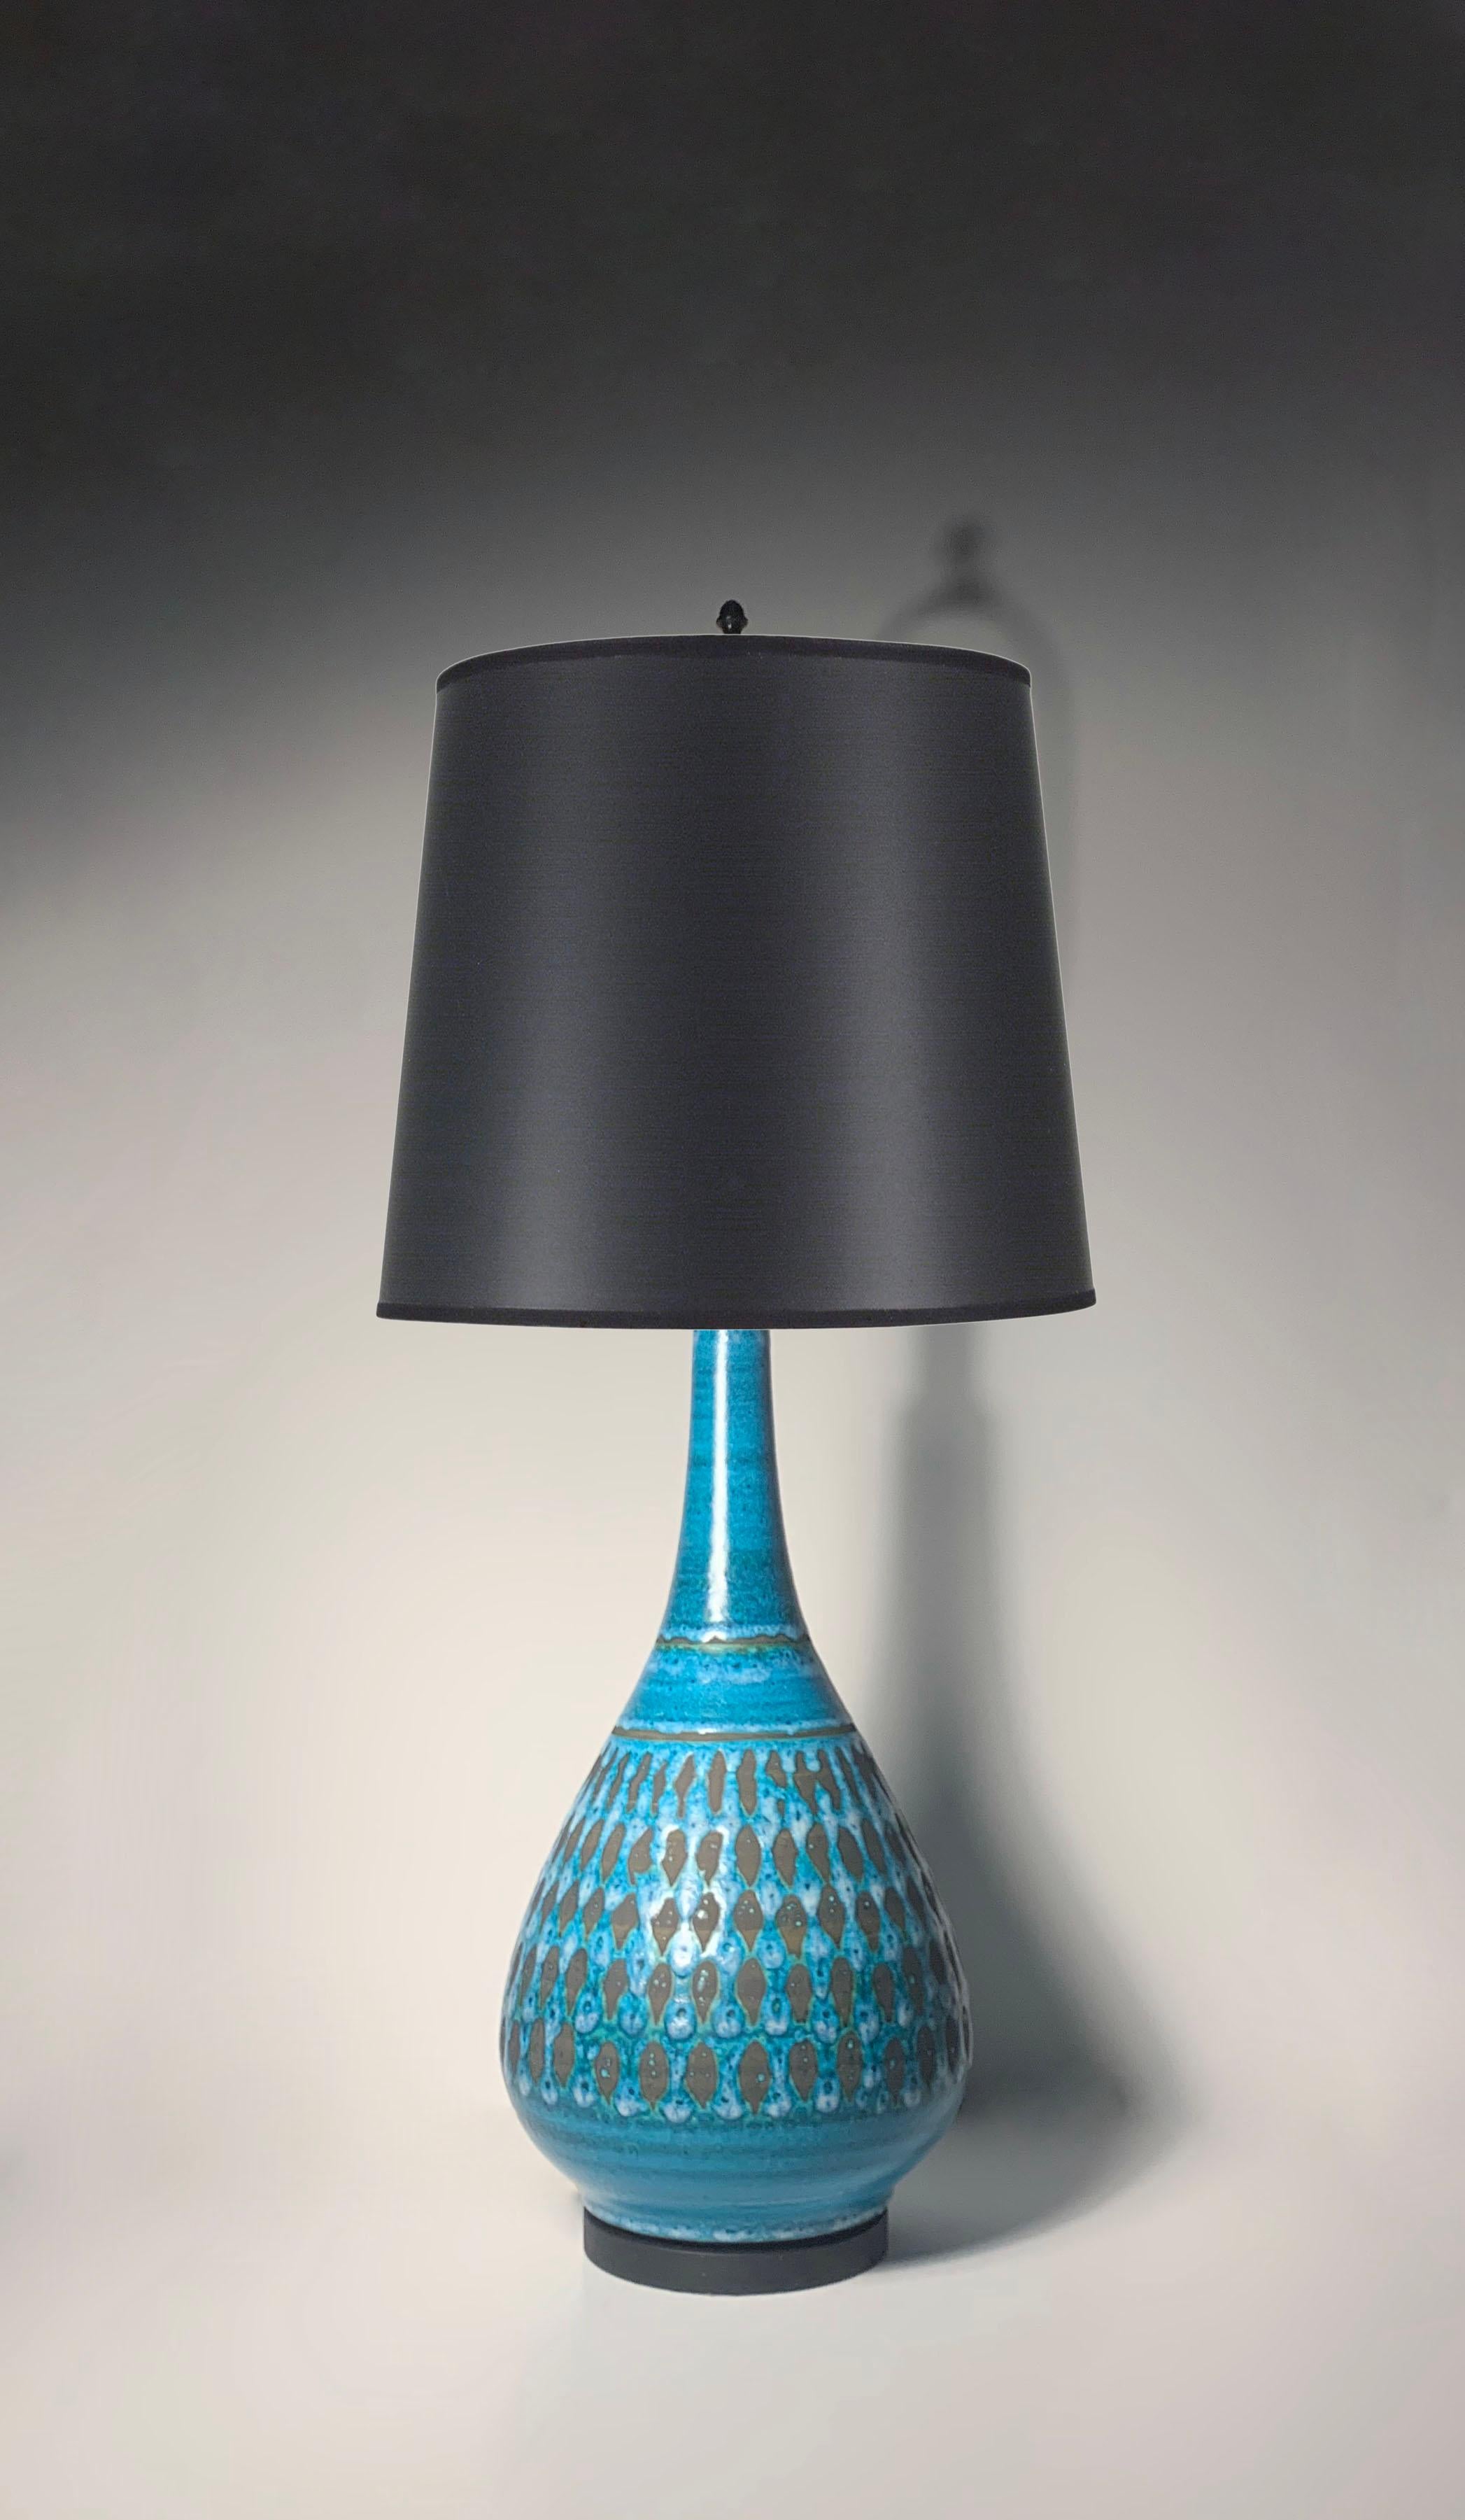 Lampe vintage moderne dans une belle couleur bleue avec un design noir mat. Un peu à la manière d'Aldo Londi pour Bitossi.  La lampe n'est pas marquée. Origine incertaine : américaine ou peut-être italienne.

Hauteur de 40,5 pouces jusqu'au sommet